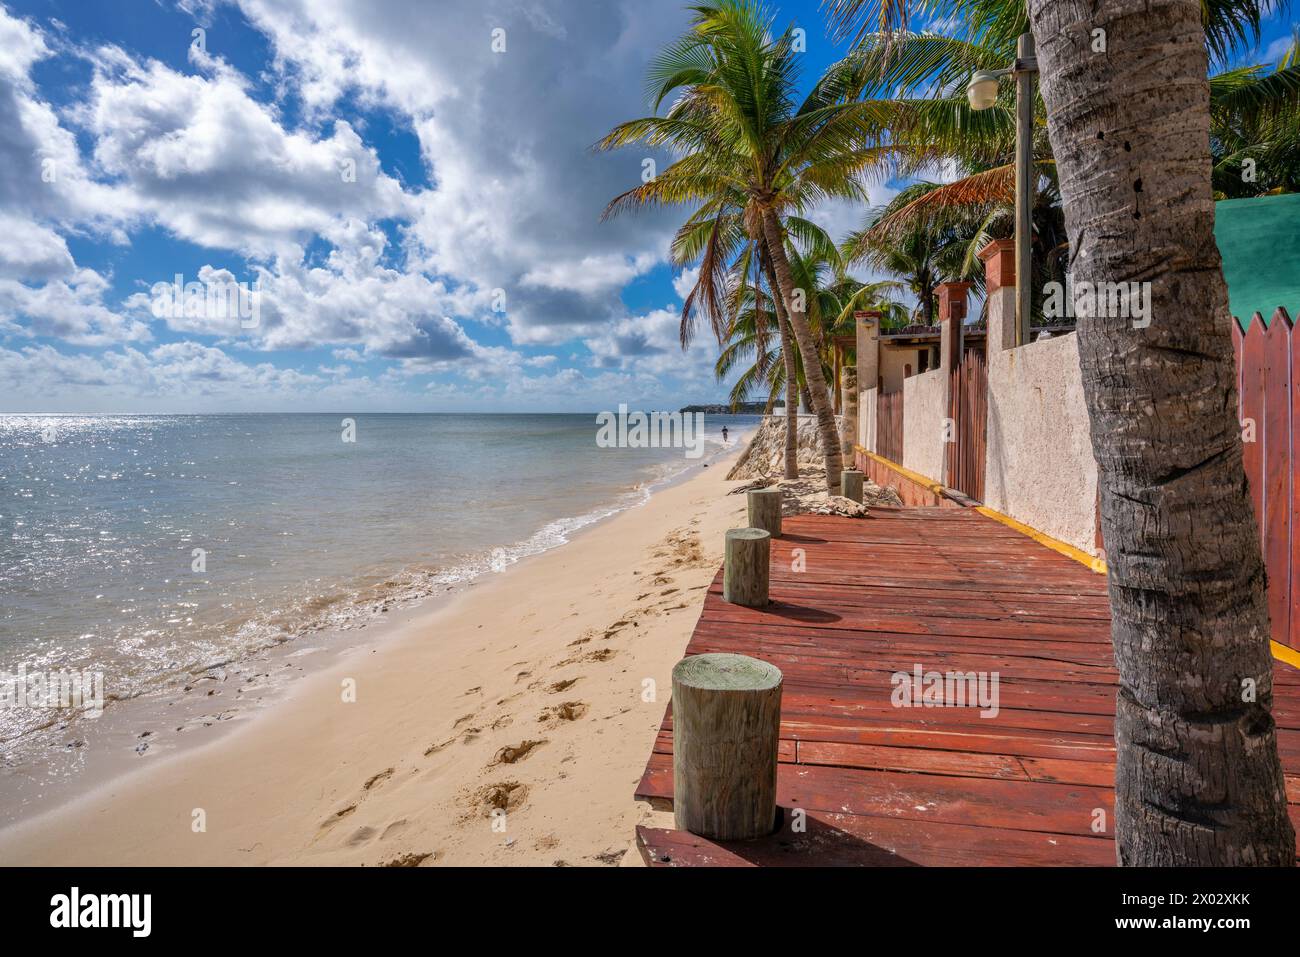 Vista de la playa cerca de Puerto Morelos, Costa Caribe, Península de Yucatán, México, América del Norte Foto de stock